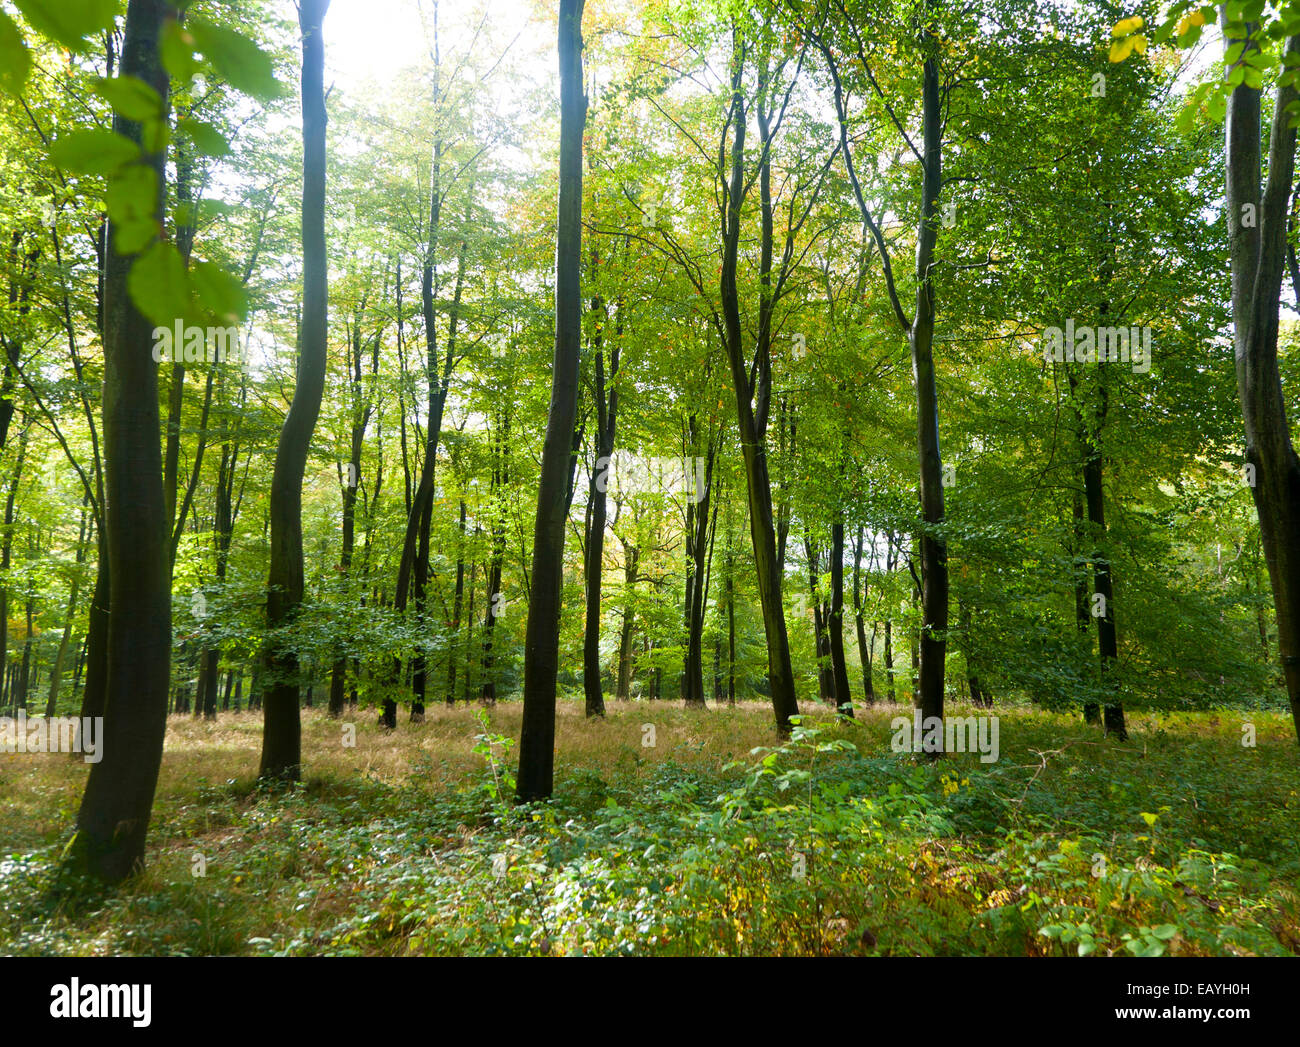 Hayedos a comienzos del otoño, Savernake forest, cerca de Marlborough, Wiltshire, Inglaterra, Reino Unido. Foto de stock